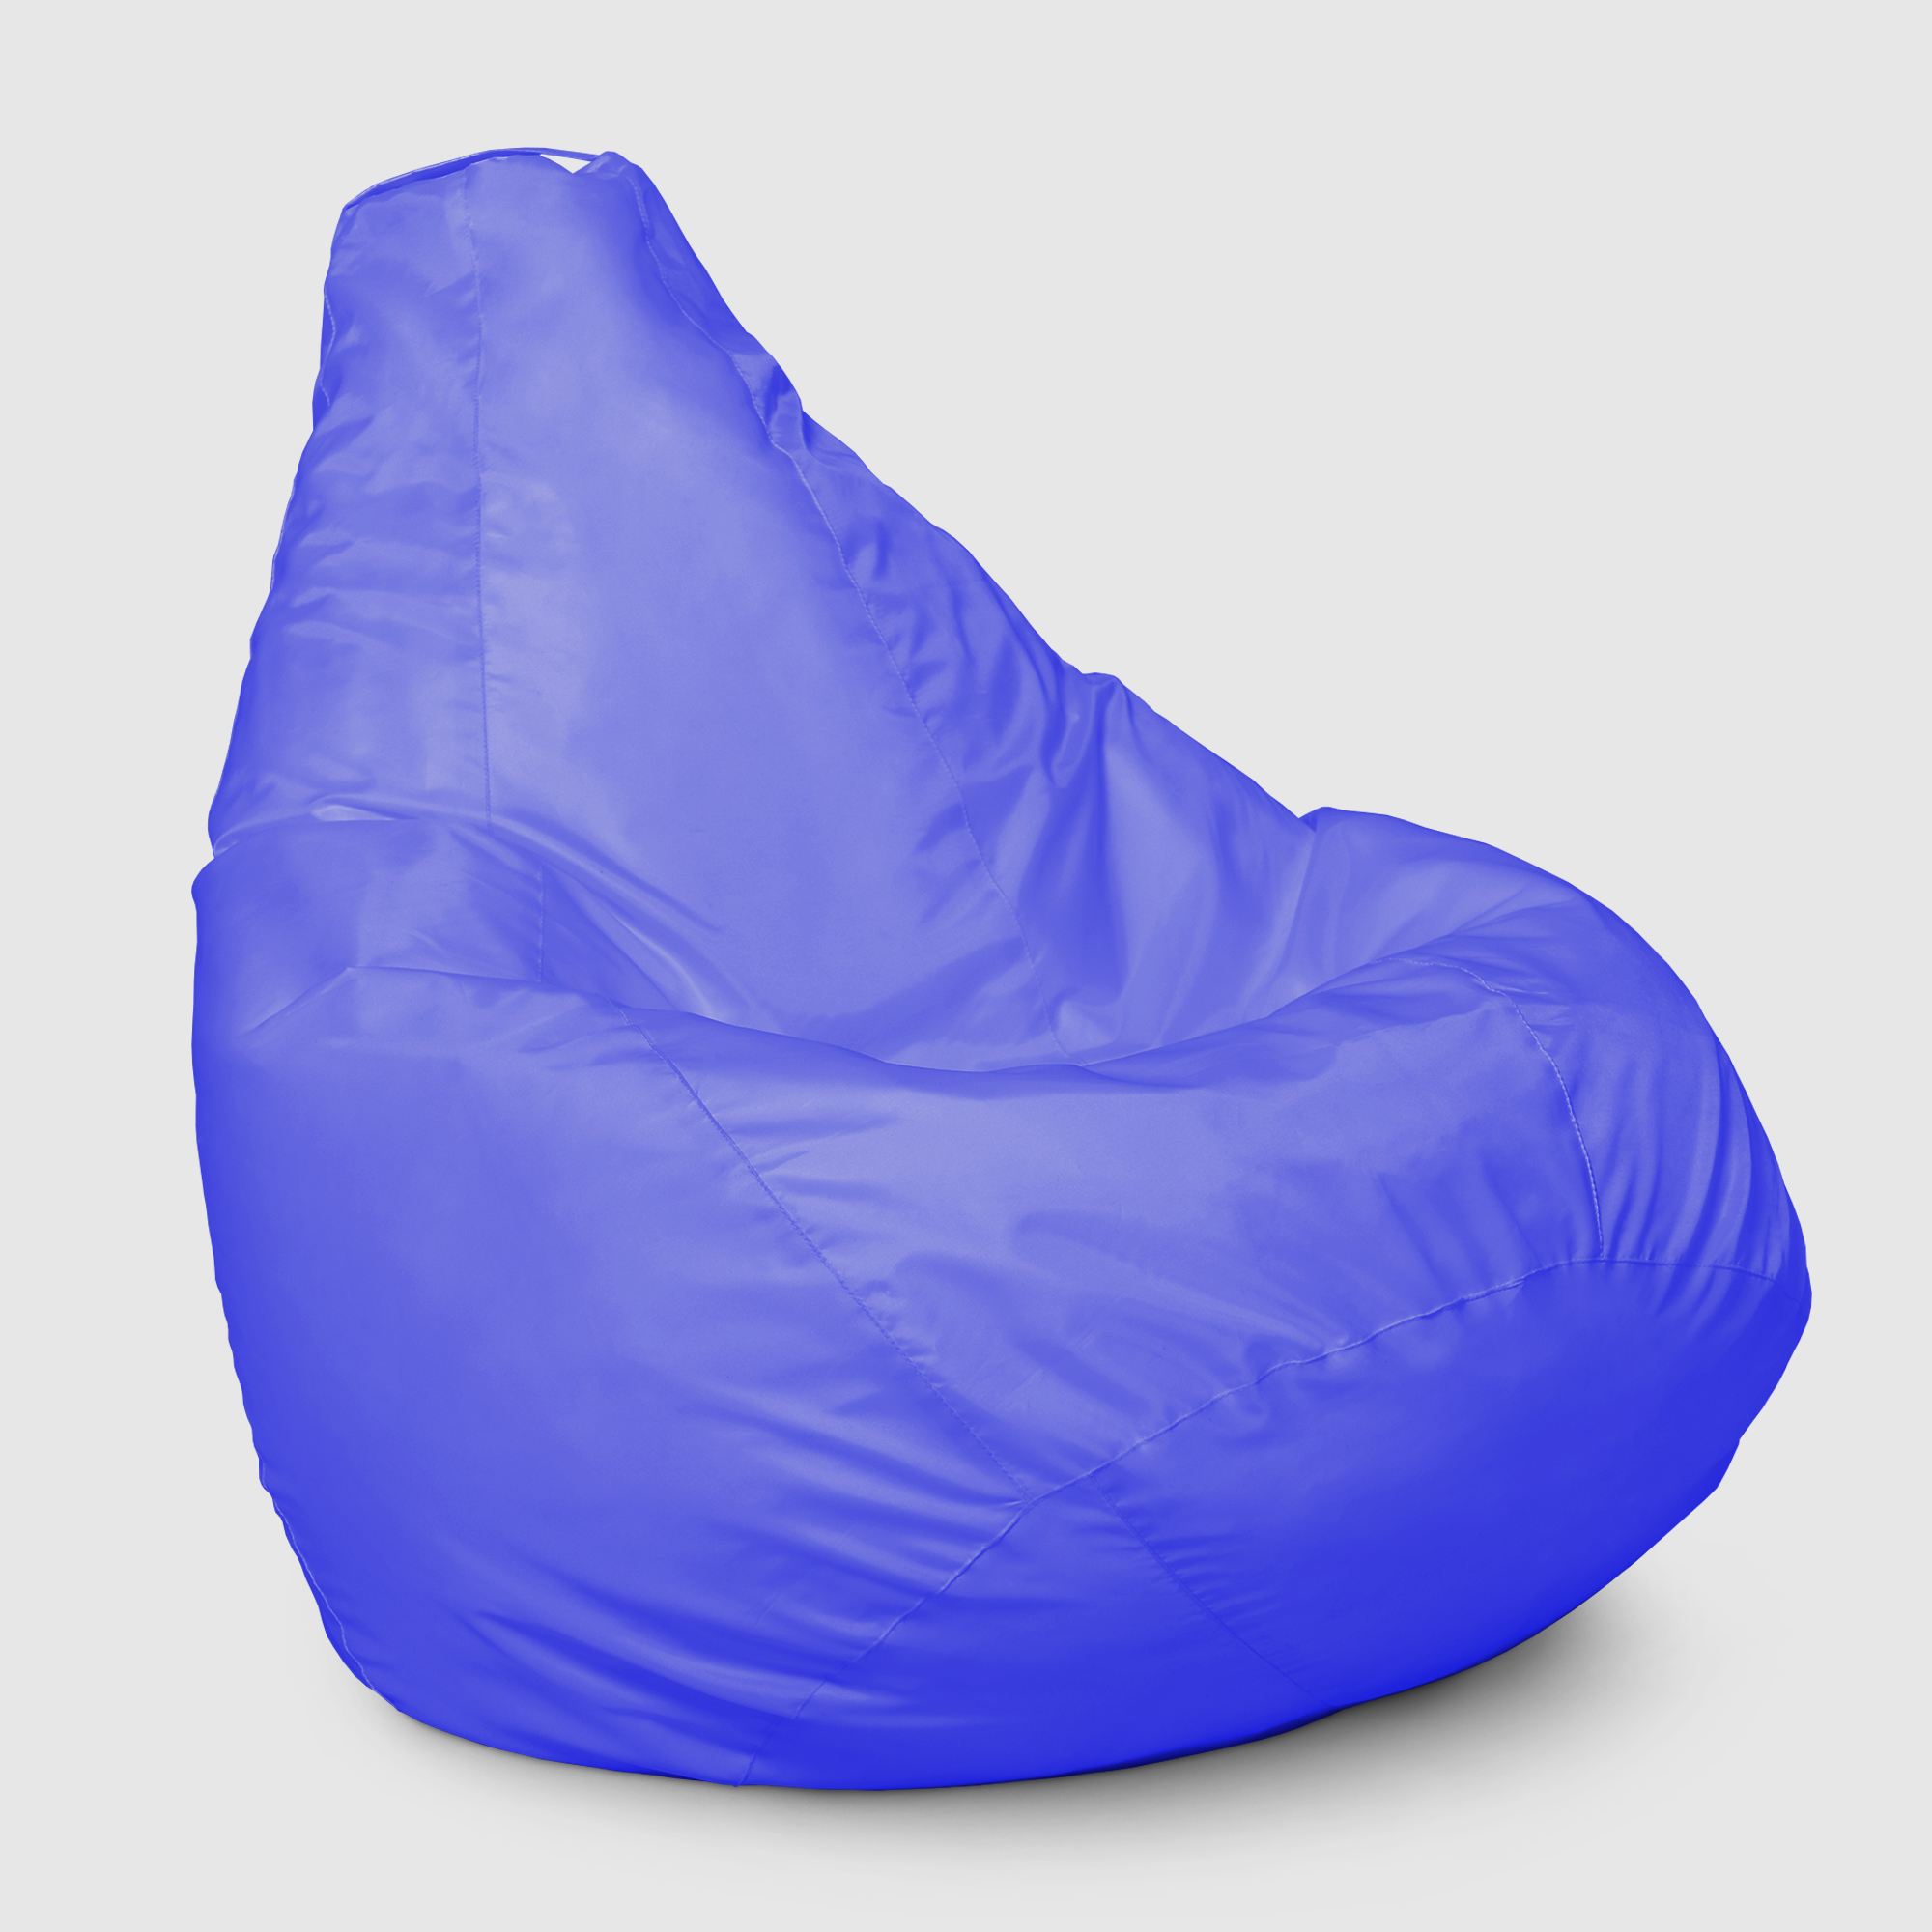 Кресло мешок Dreambag Меган xl Синее 85х85х125 см кресло мешок dreambag меган xl синее 85х85х125 см